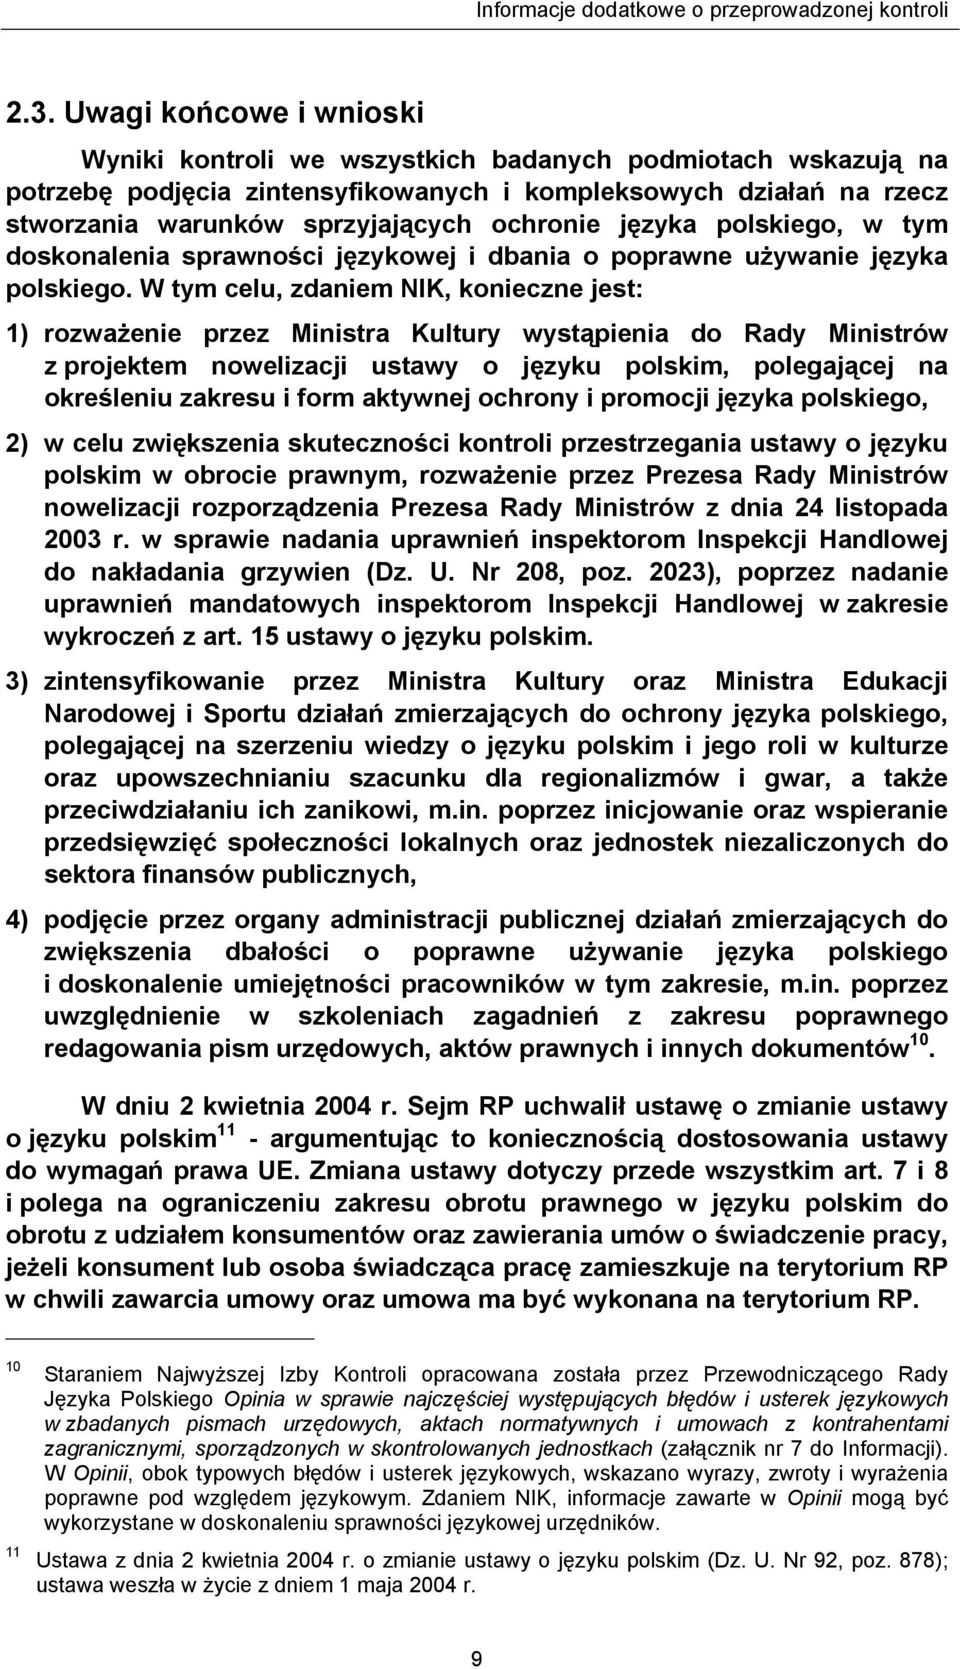 W tym celu, zdaniem NIK, konieczne jest: 1) rozważenie przez Ministra Kultury wystąpienia do Rady Ministrów z projektem nowelizacji ustawy o języku polskim, polegającej na określeniu zakresu i form